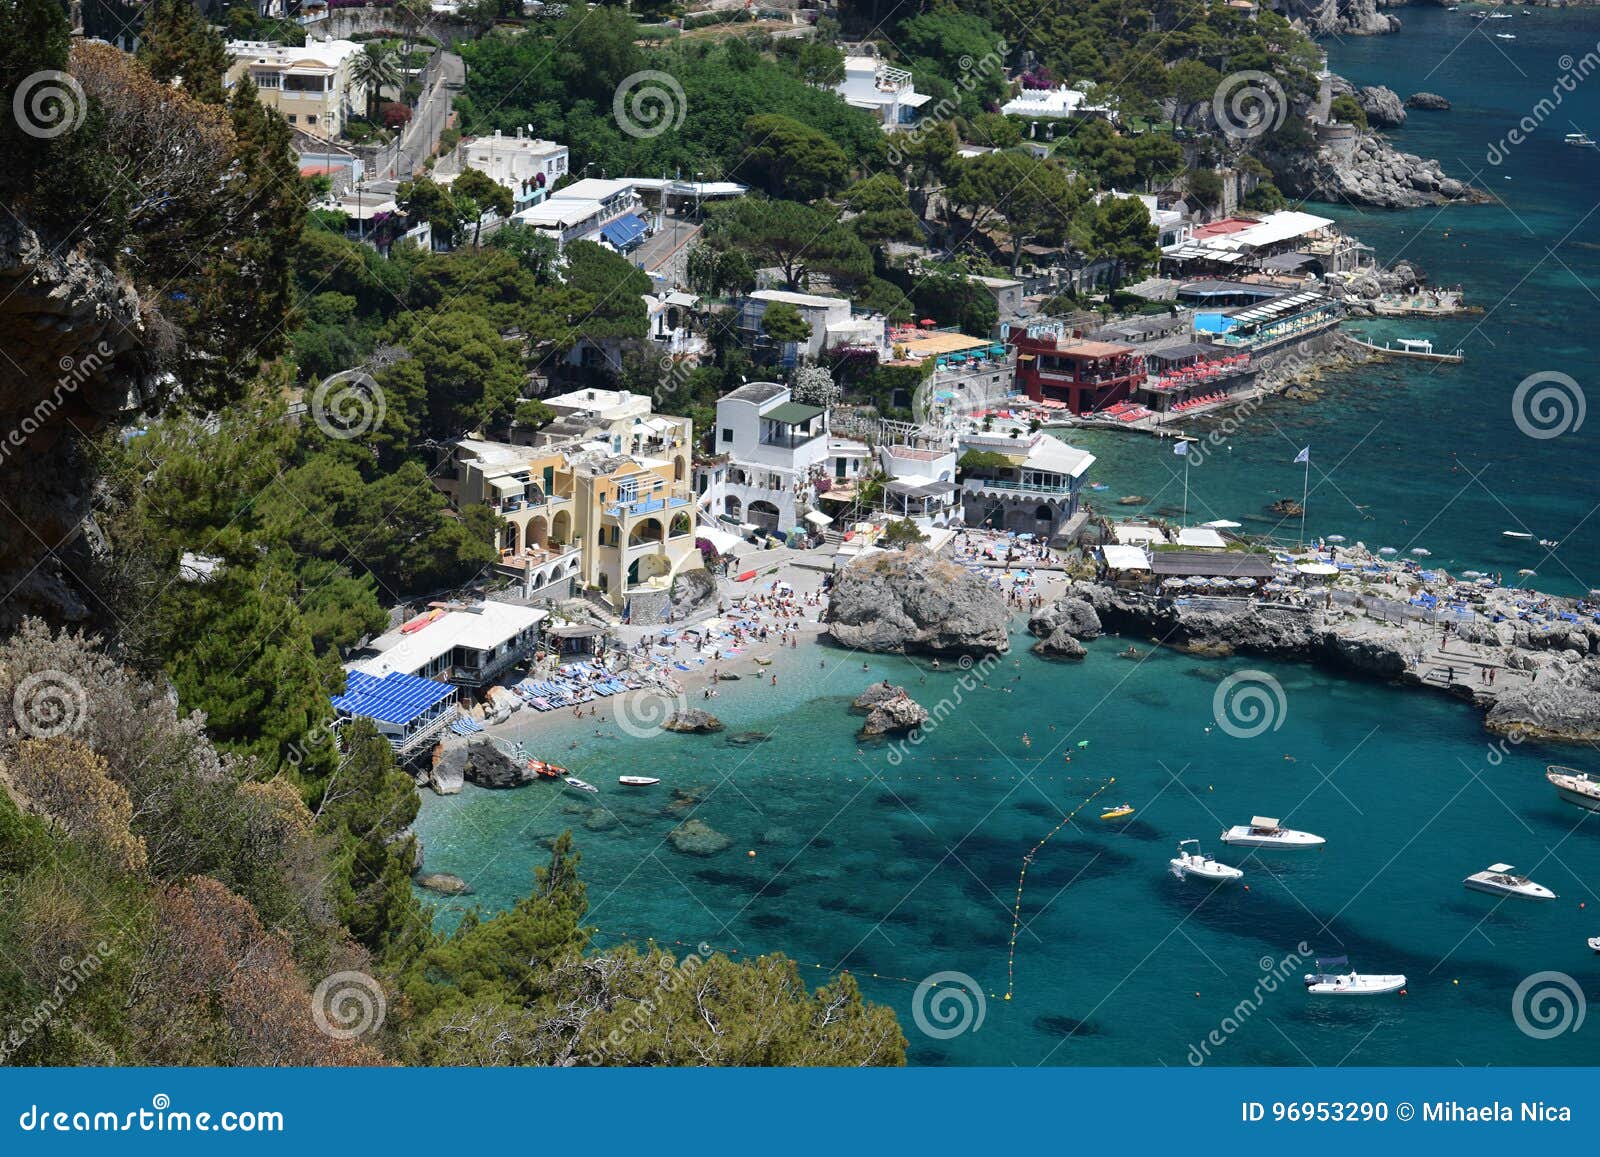 view of marina piccola beaches on capri, italy